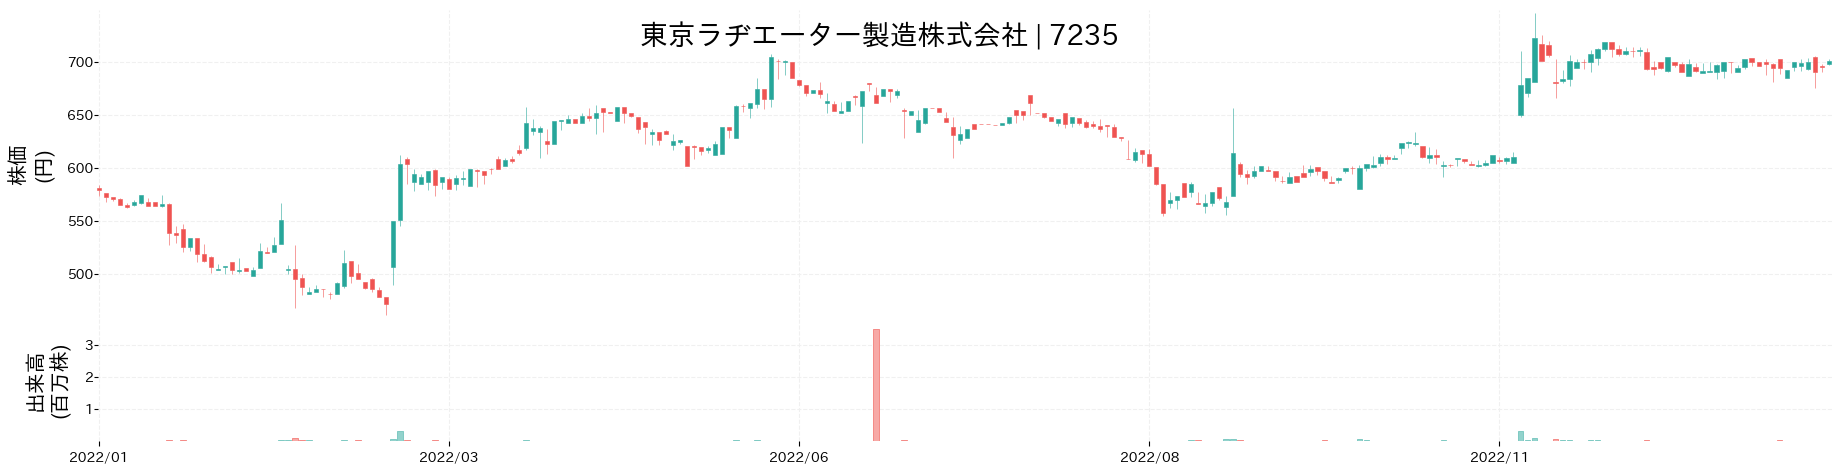 東京ラヂエーター製造の株価推移(2022)